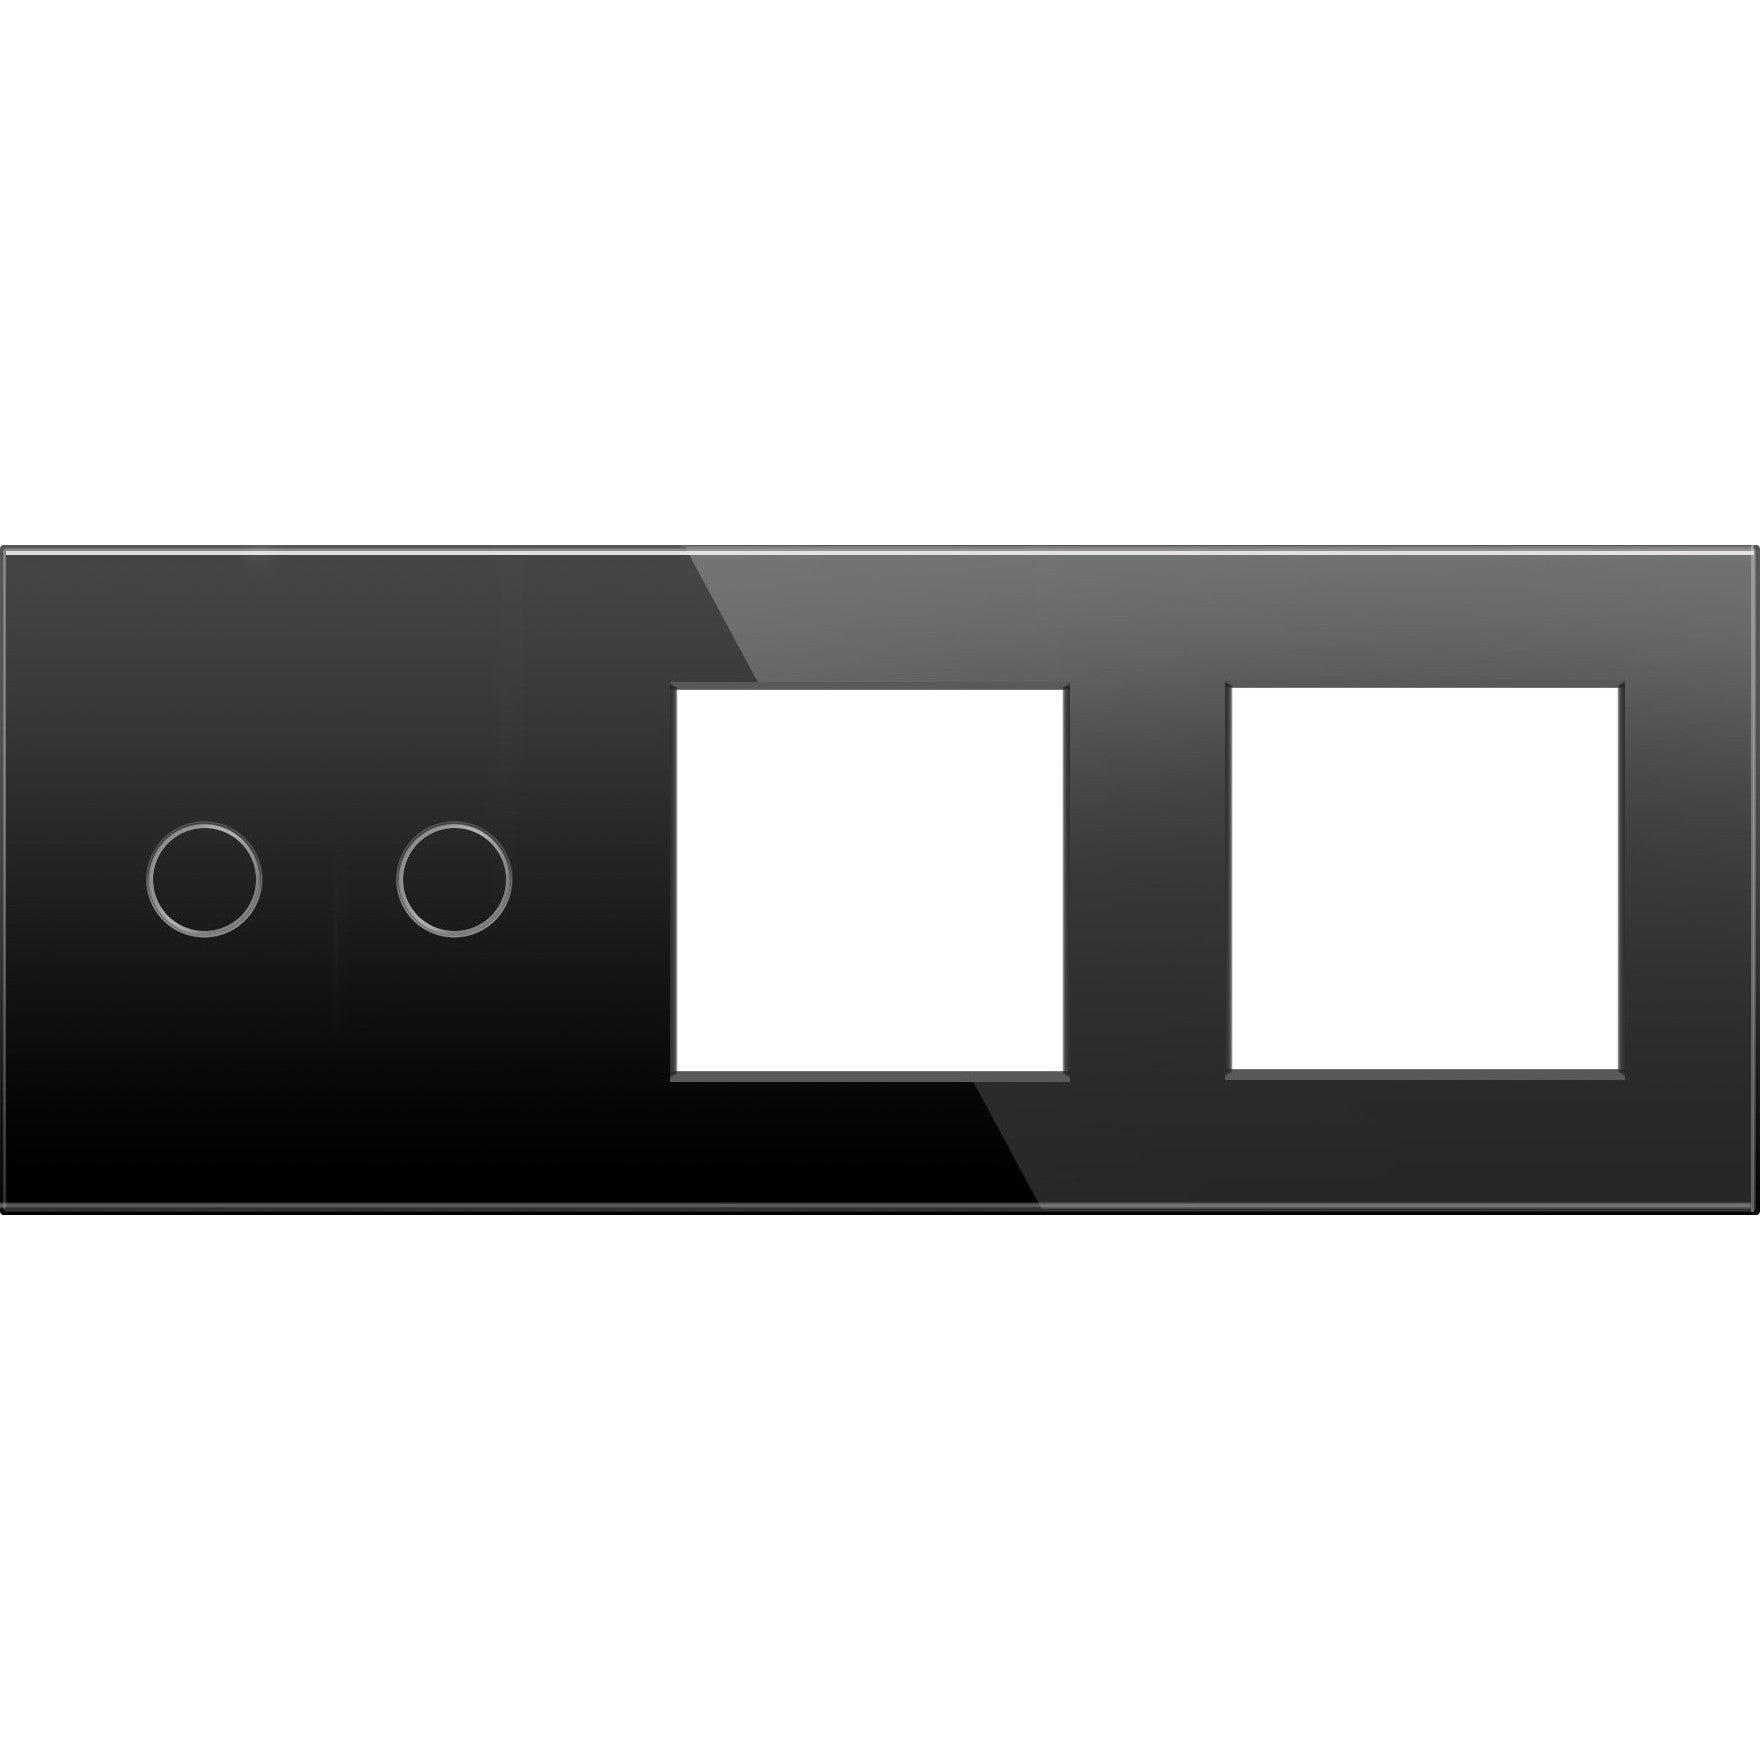 Panel de vidrio de 2 módulos y 2 marcos negro